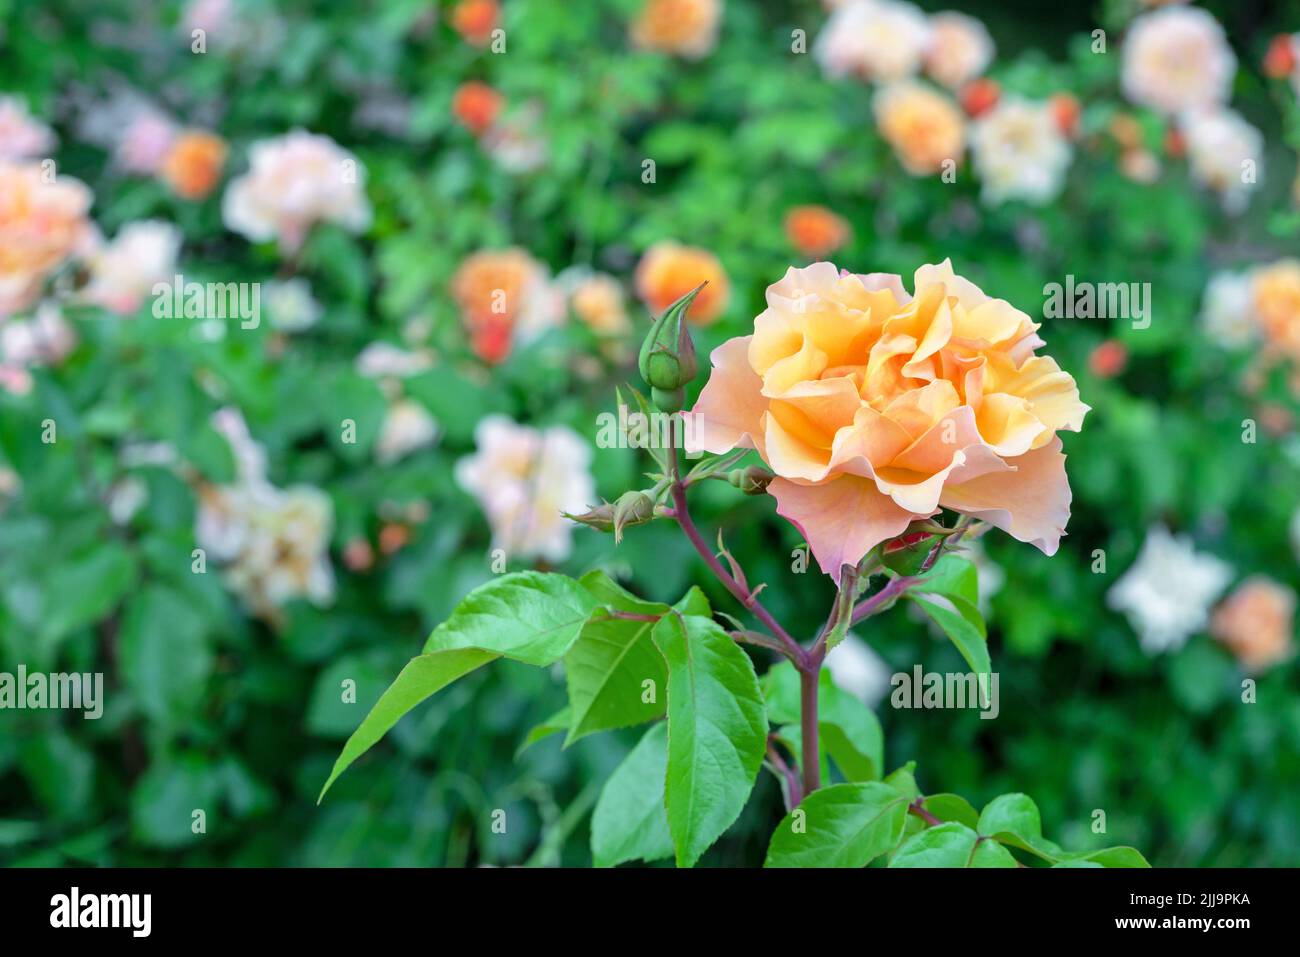 Rose de thé orange ou rose Bengale, rosehip chinois, rose indienne fleurit dans le jardin de roses en été. Banque D'Images